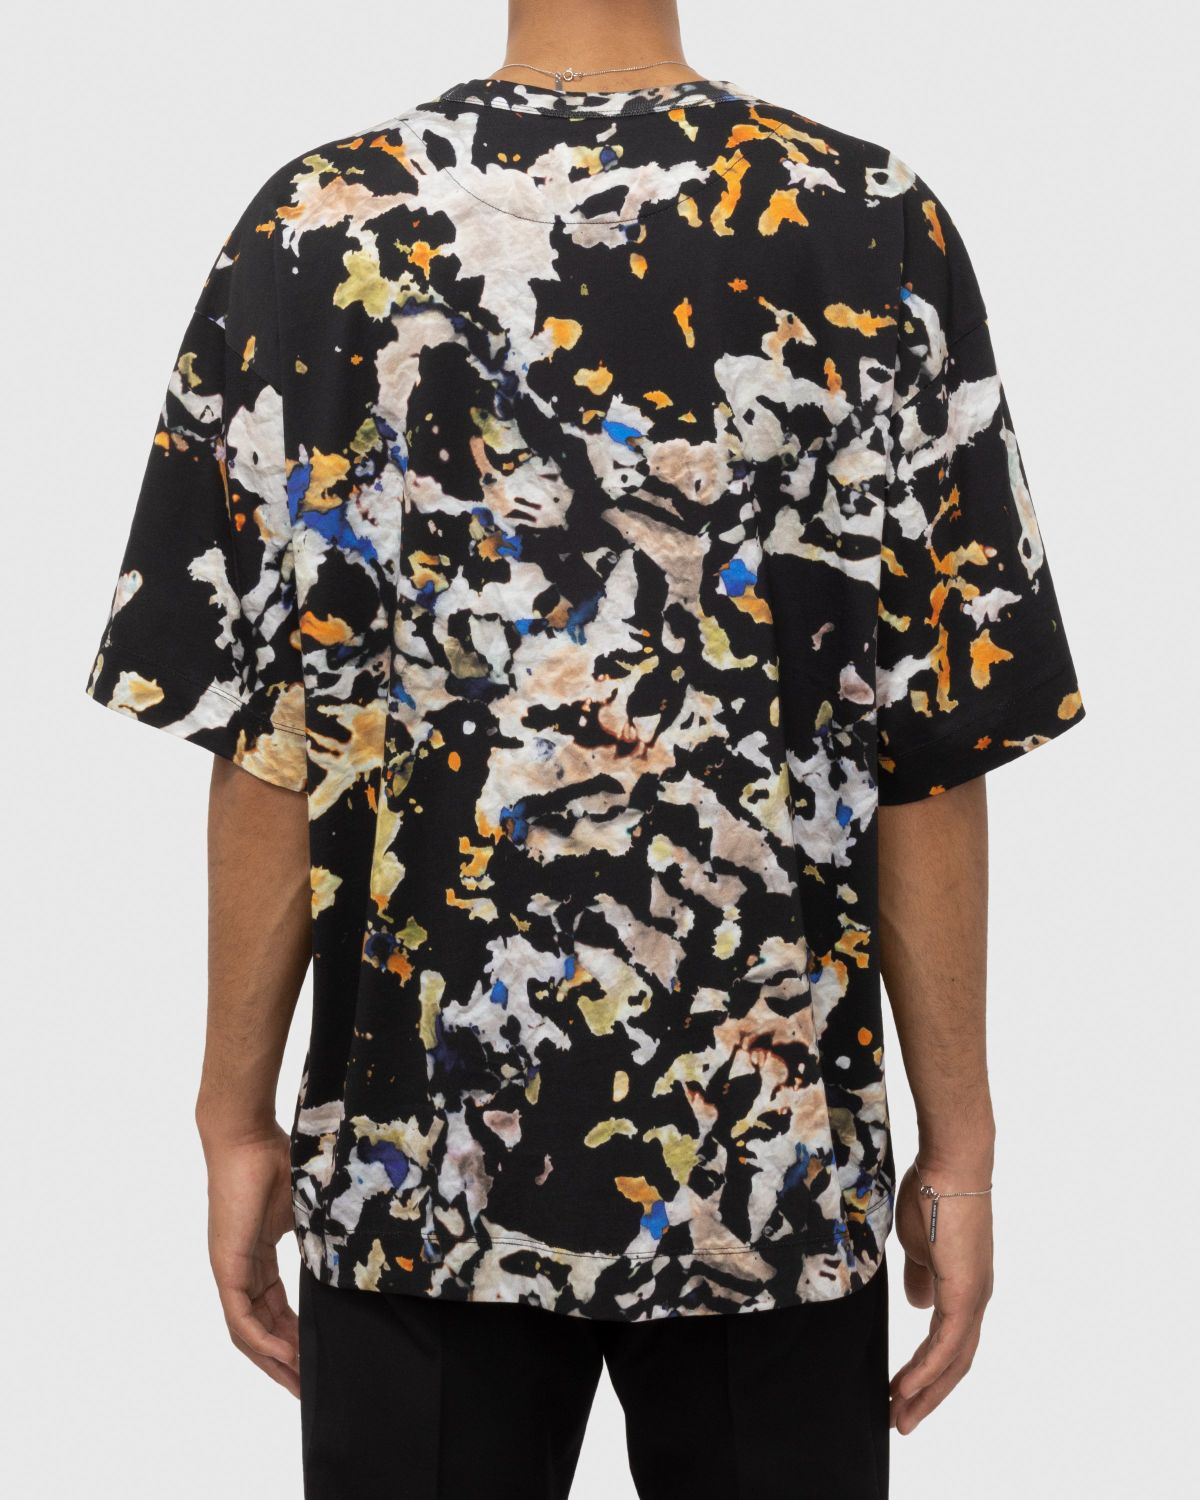 Dries van Noten – Hein T-Shirt Multi | Highsnobiety Shop